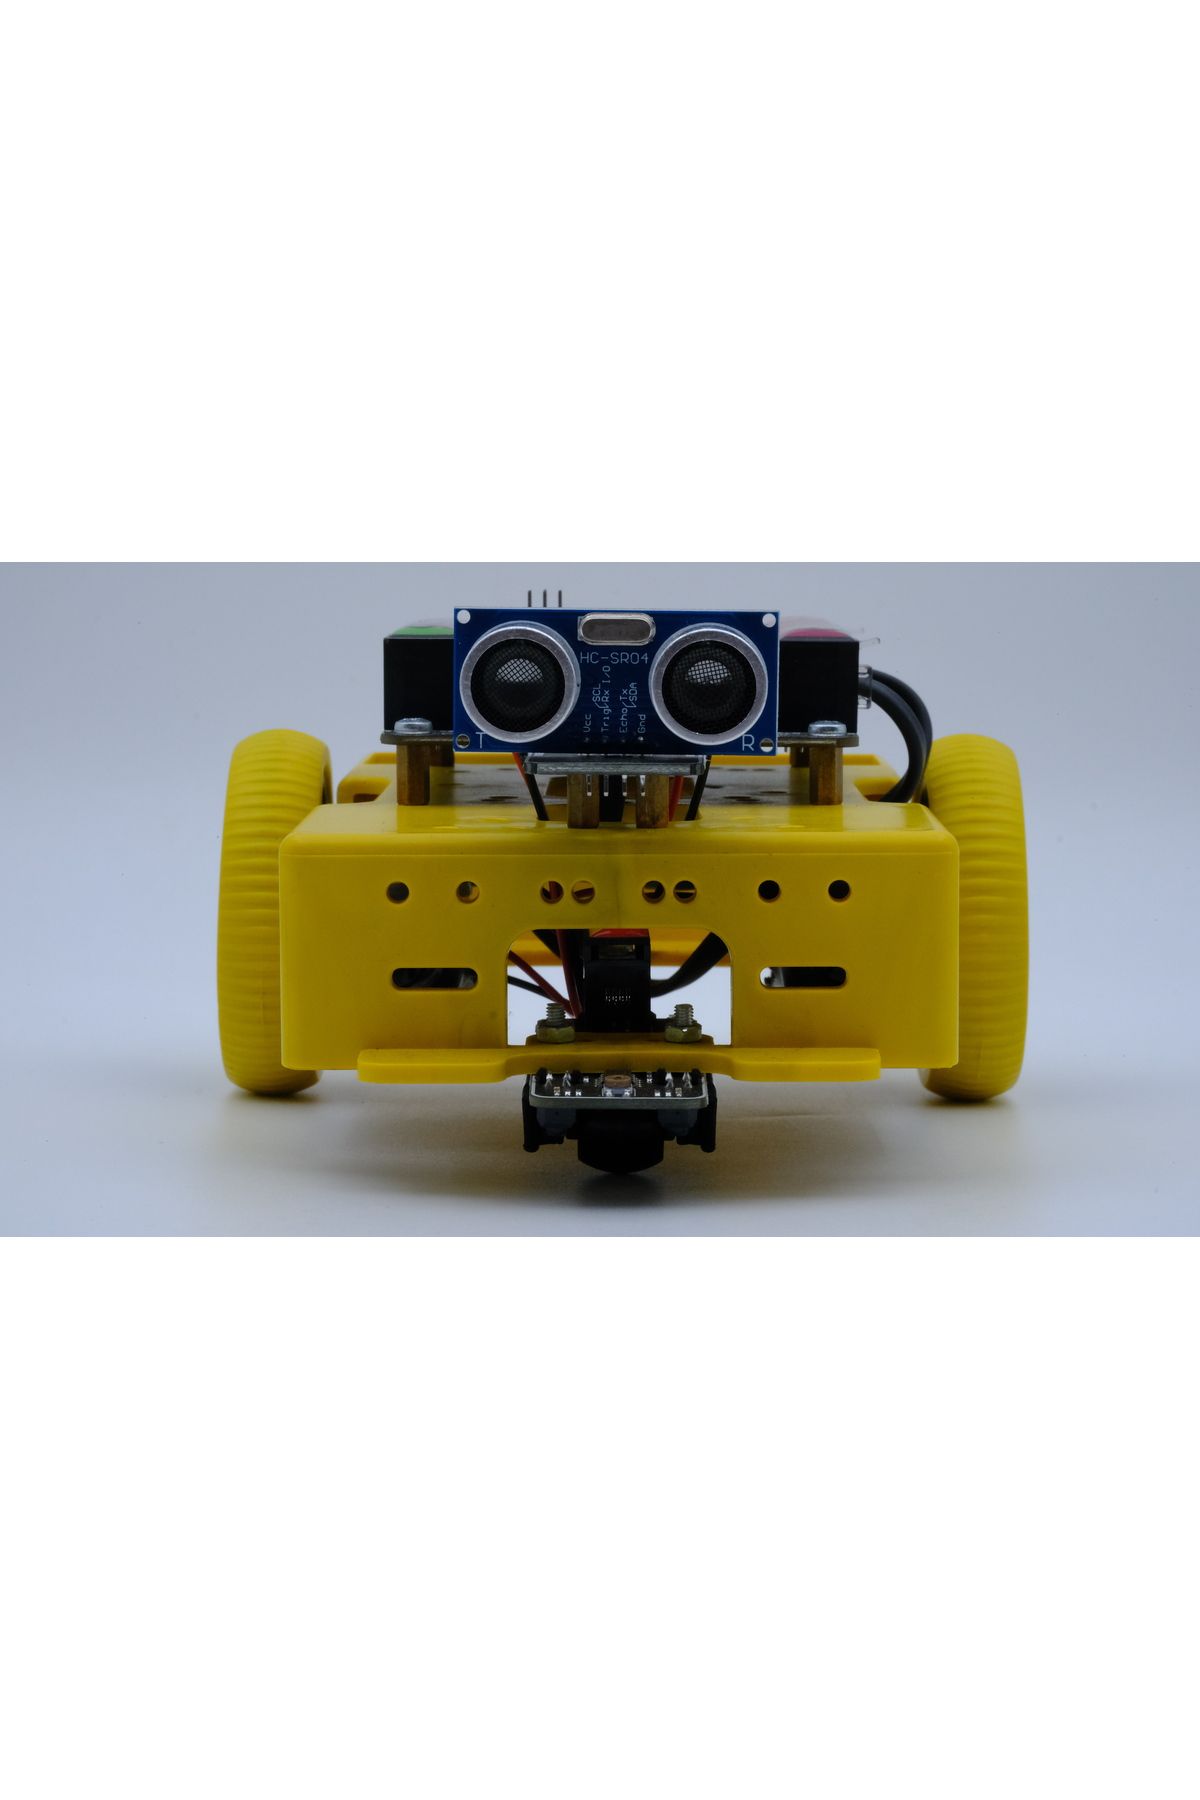 PİNOO Bot Kodlama Ve Robotik Eğitim Robotu - Pinoobot